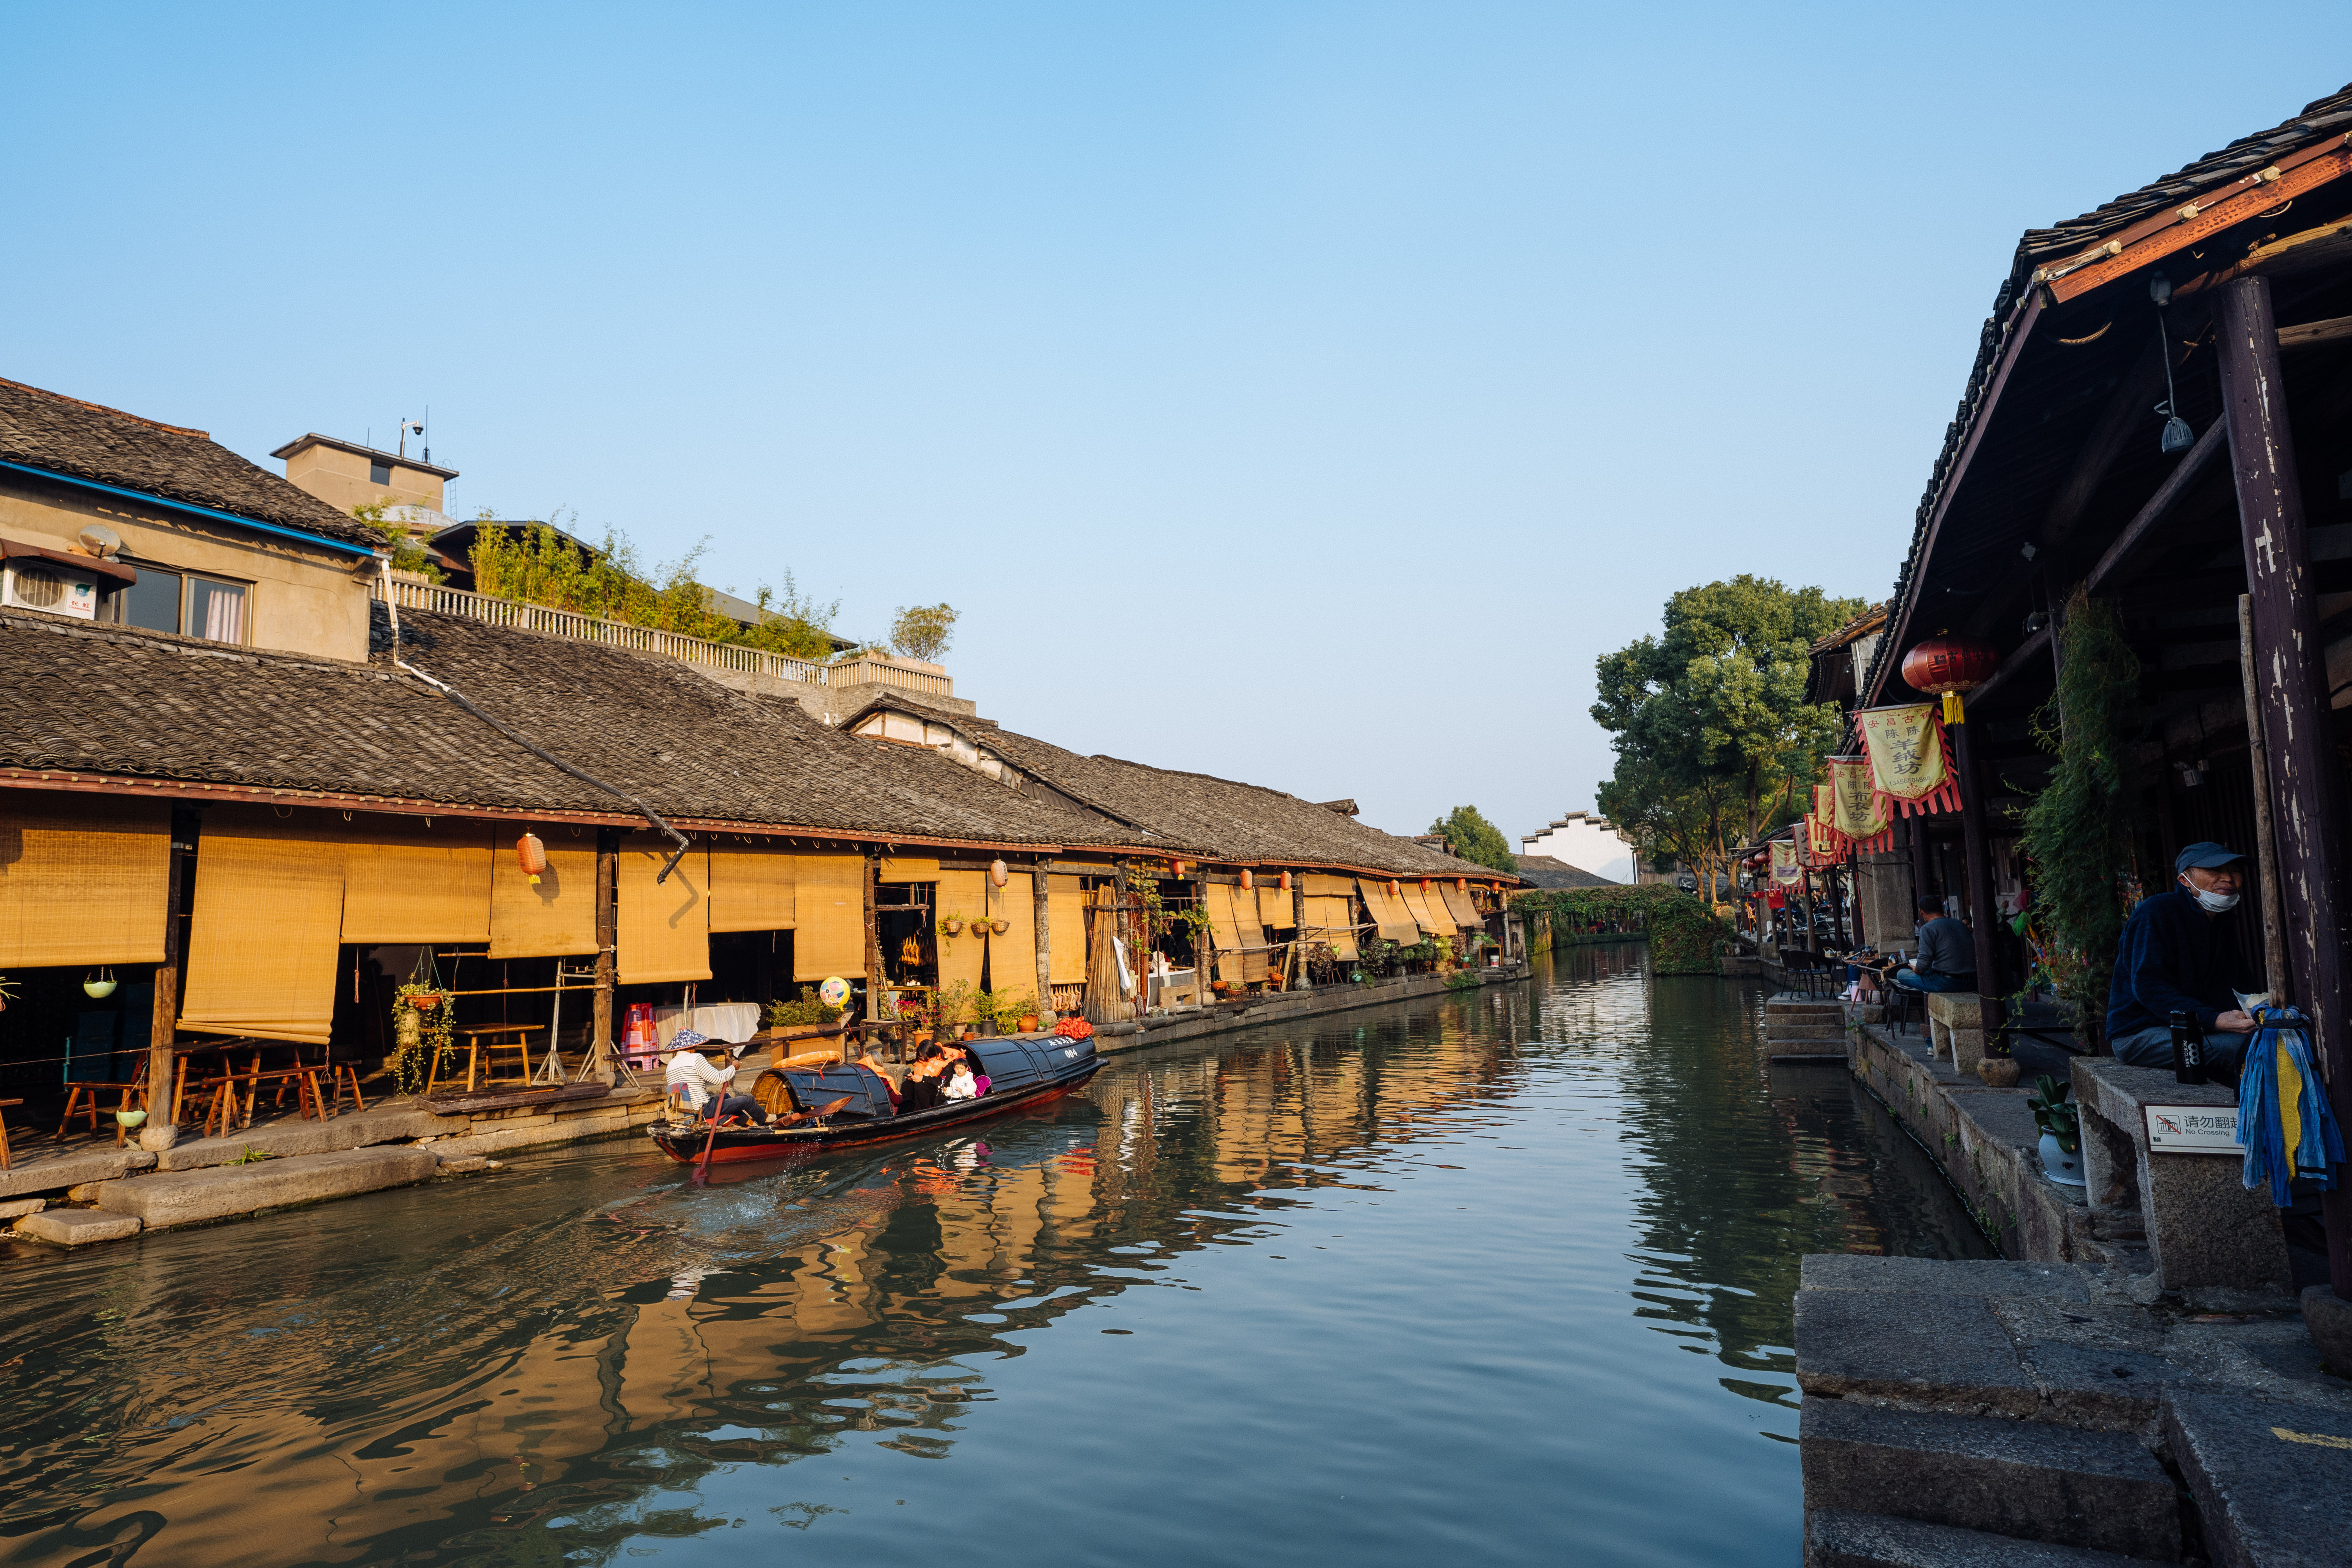 安昌古镇作为绍兴有名的四大古镇之一,其建筑风格传承了典型的江南